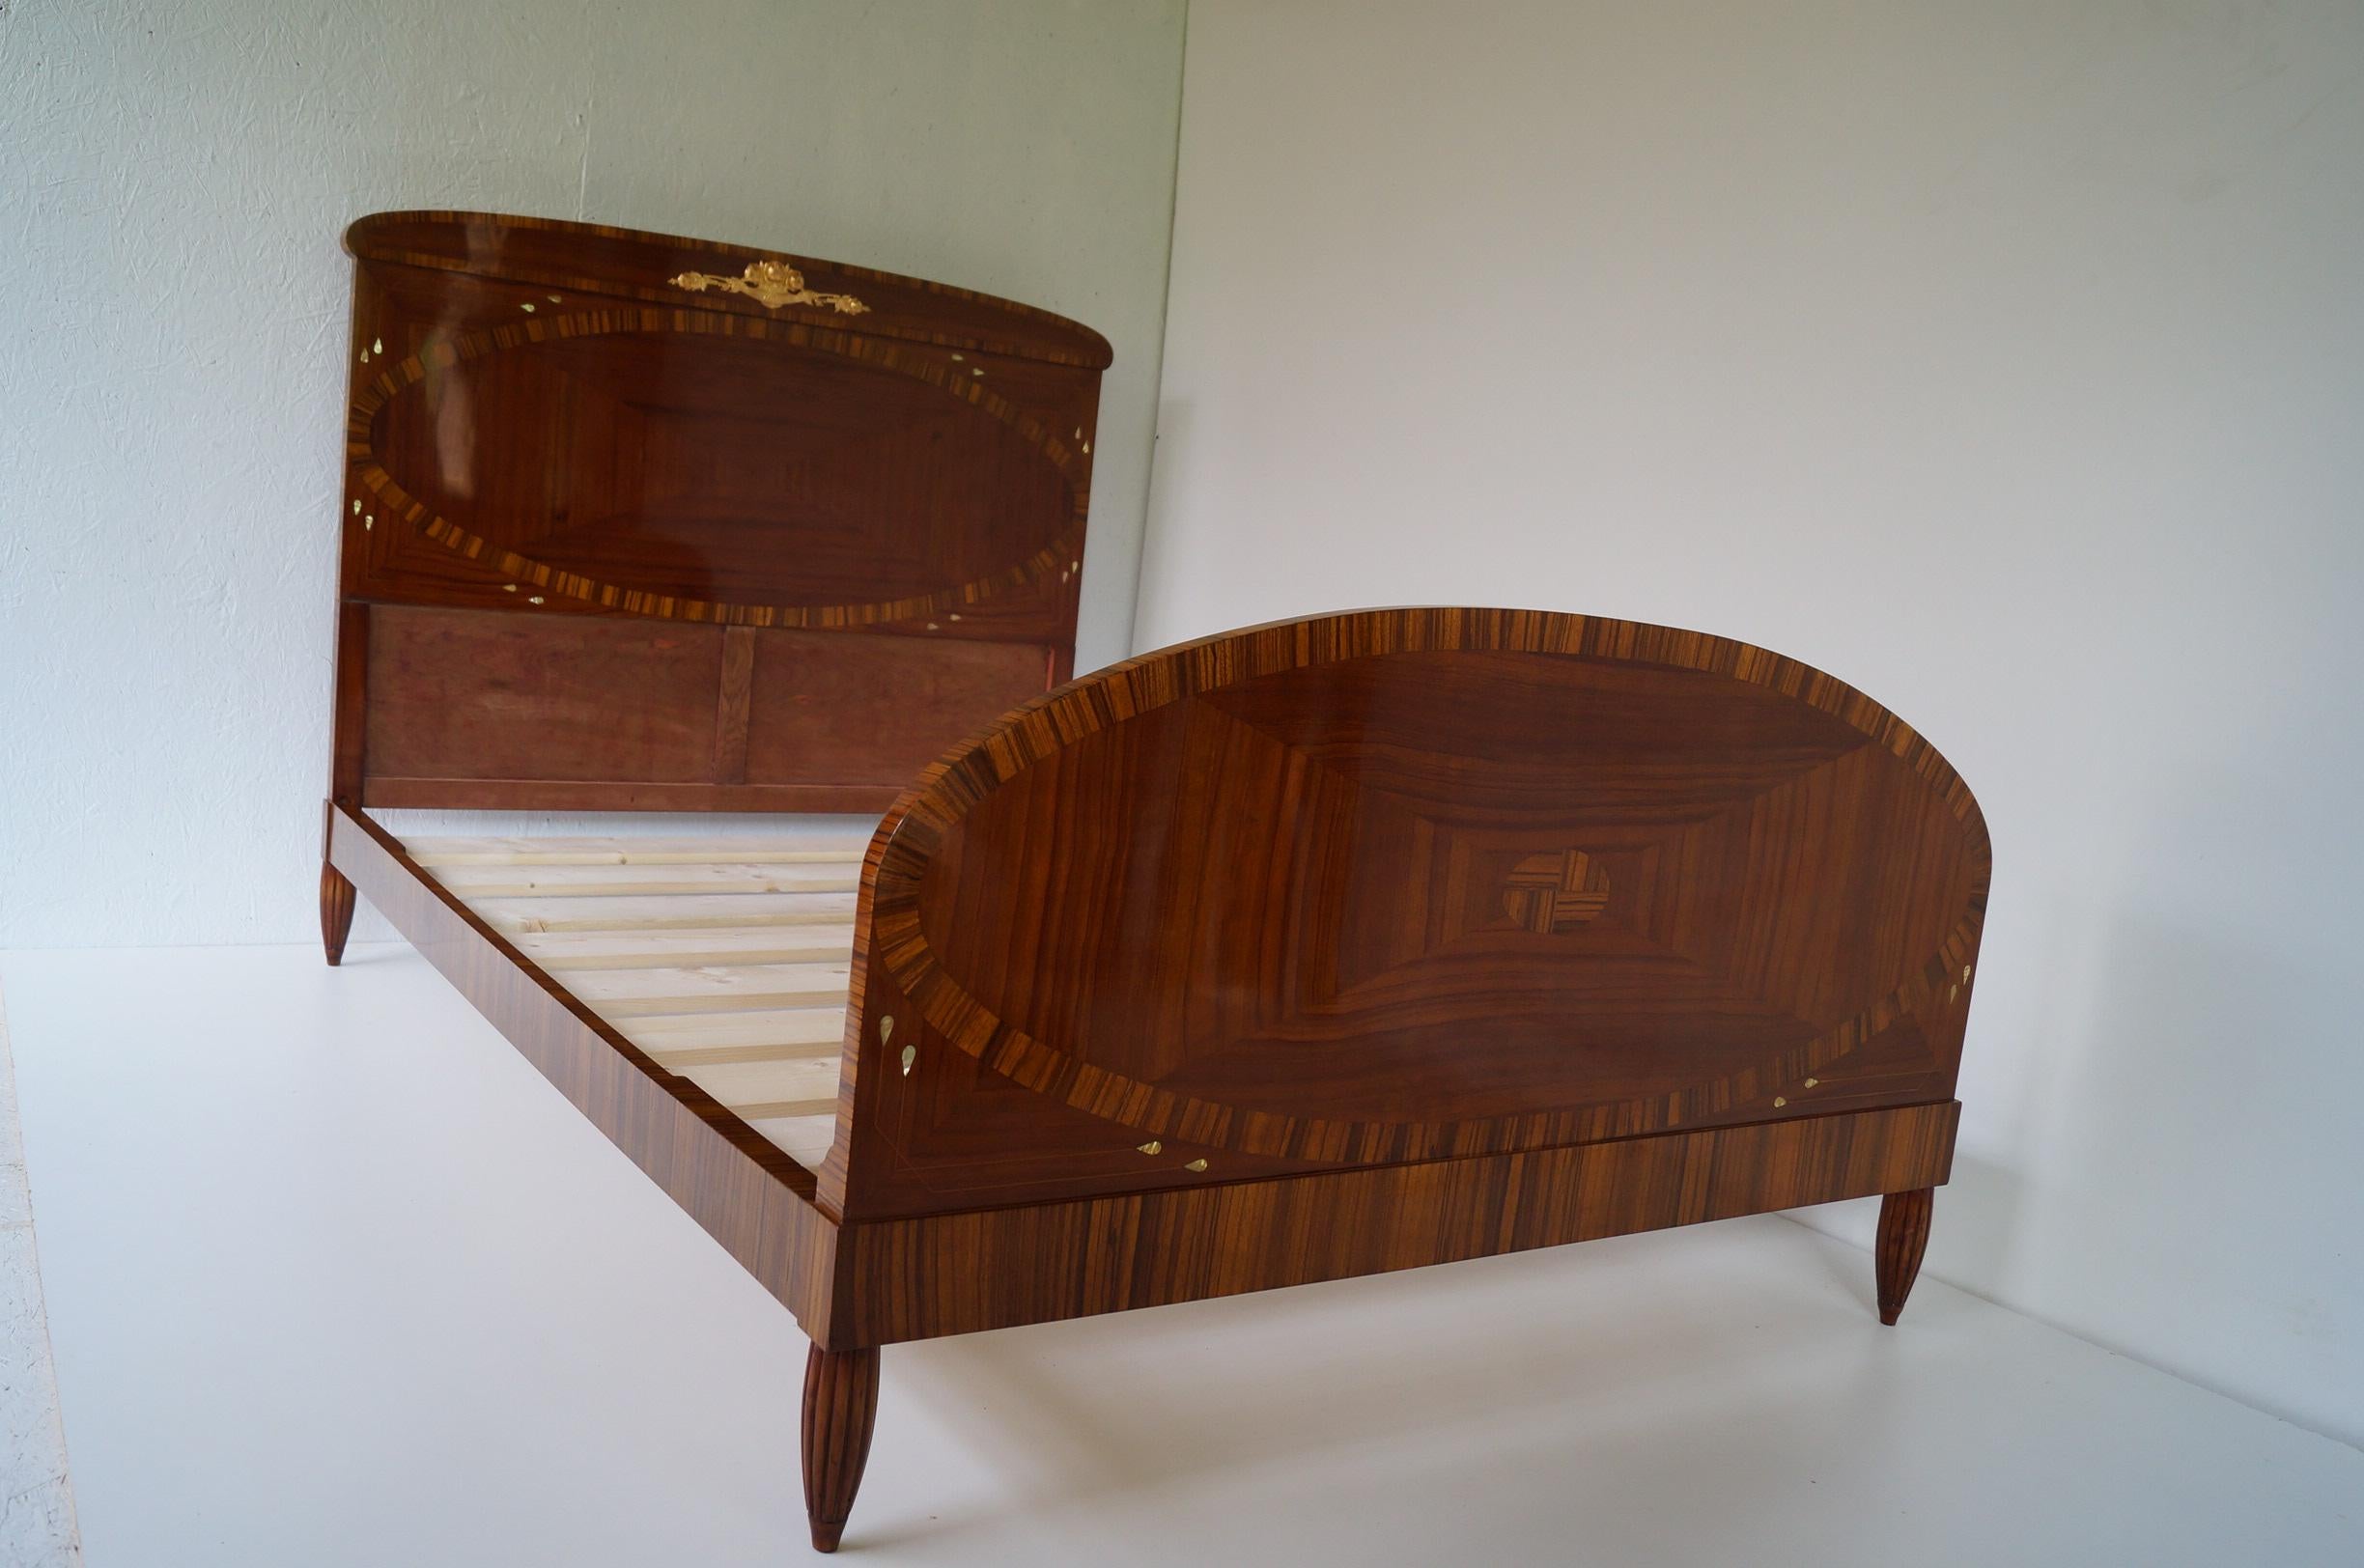 Nous présentons un lit Art Déco Secesja de 1900-1910.
Chaque meuble qui sort de notre atelier, du début à la fin, est soumis à une rénovation manuelle, afin de lui rendre son état d'origine d'il y a de nombreuses années (il a été nettoyé jusqu'au